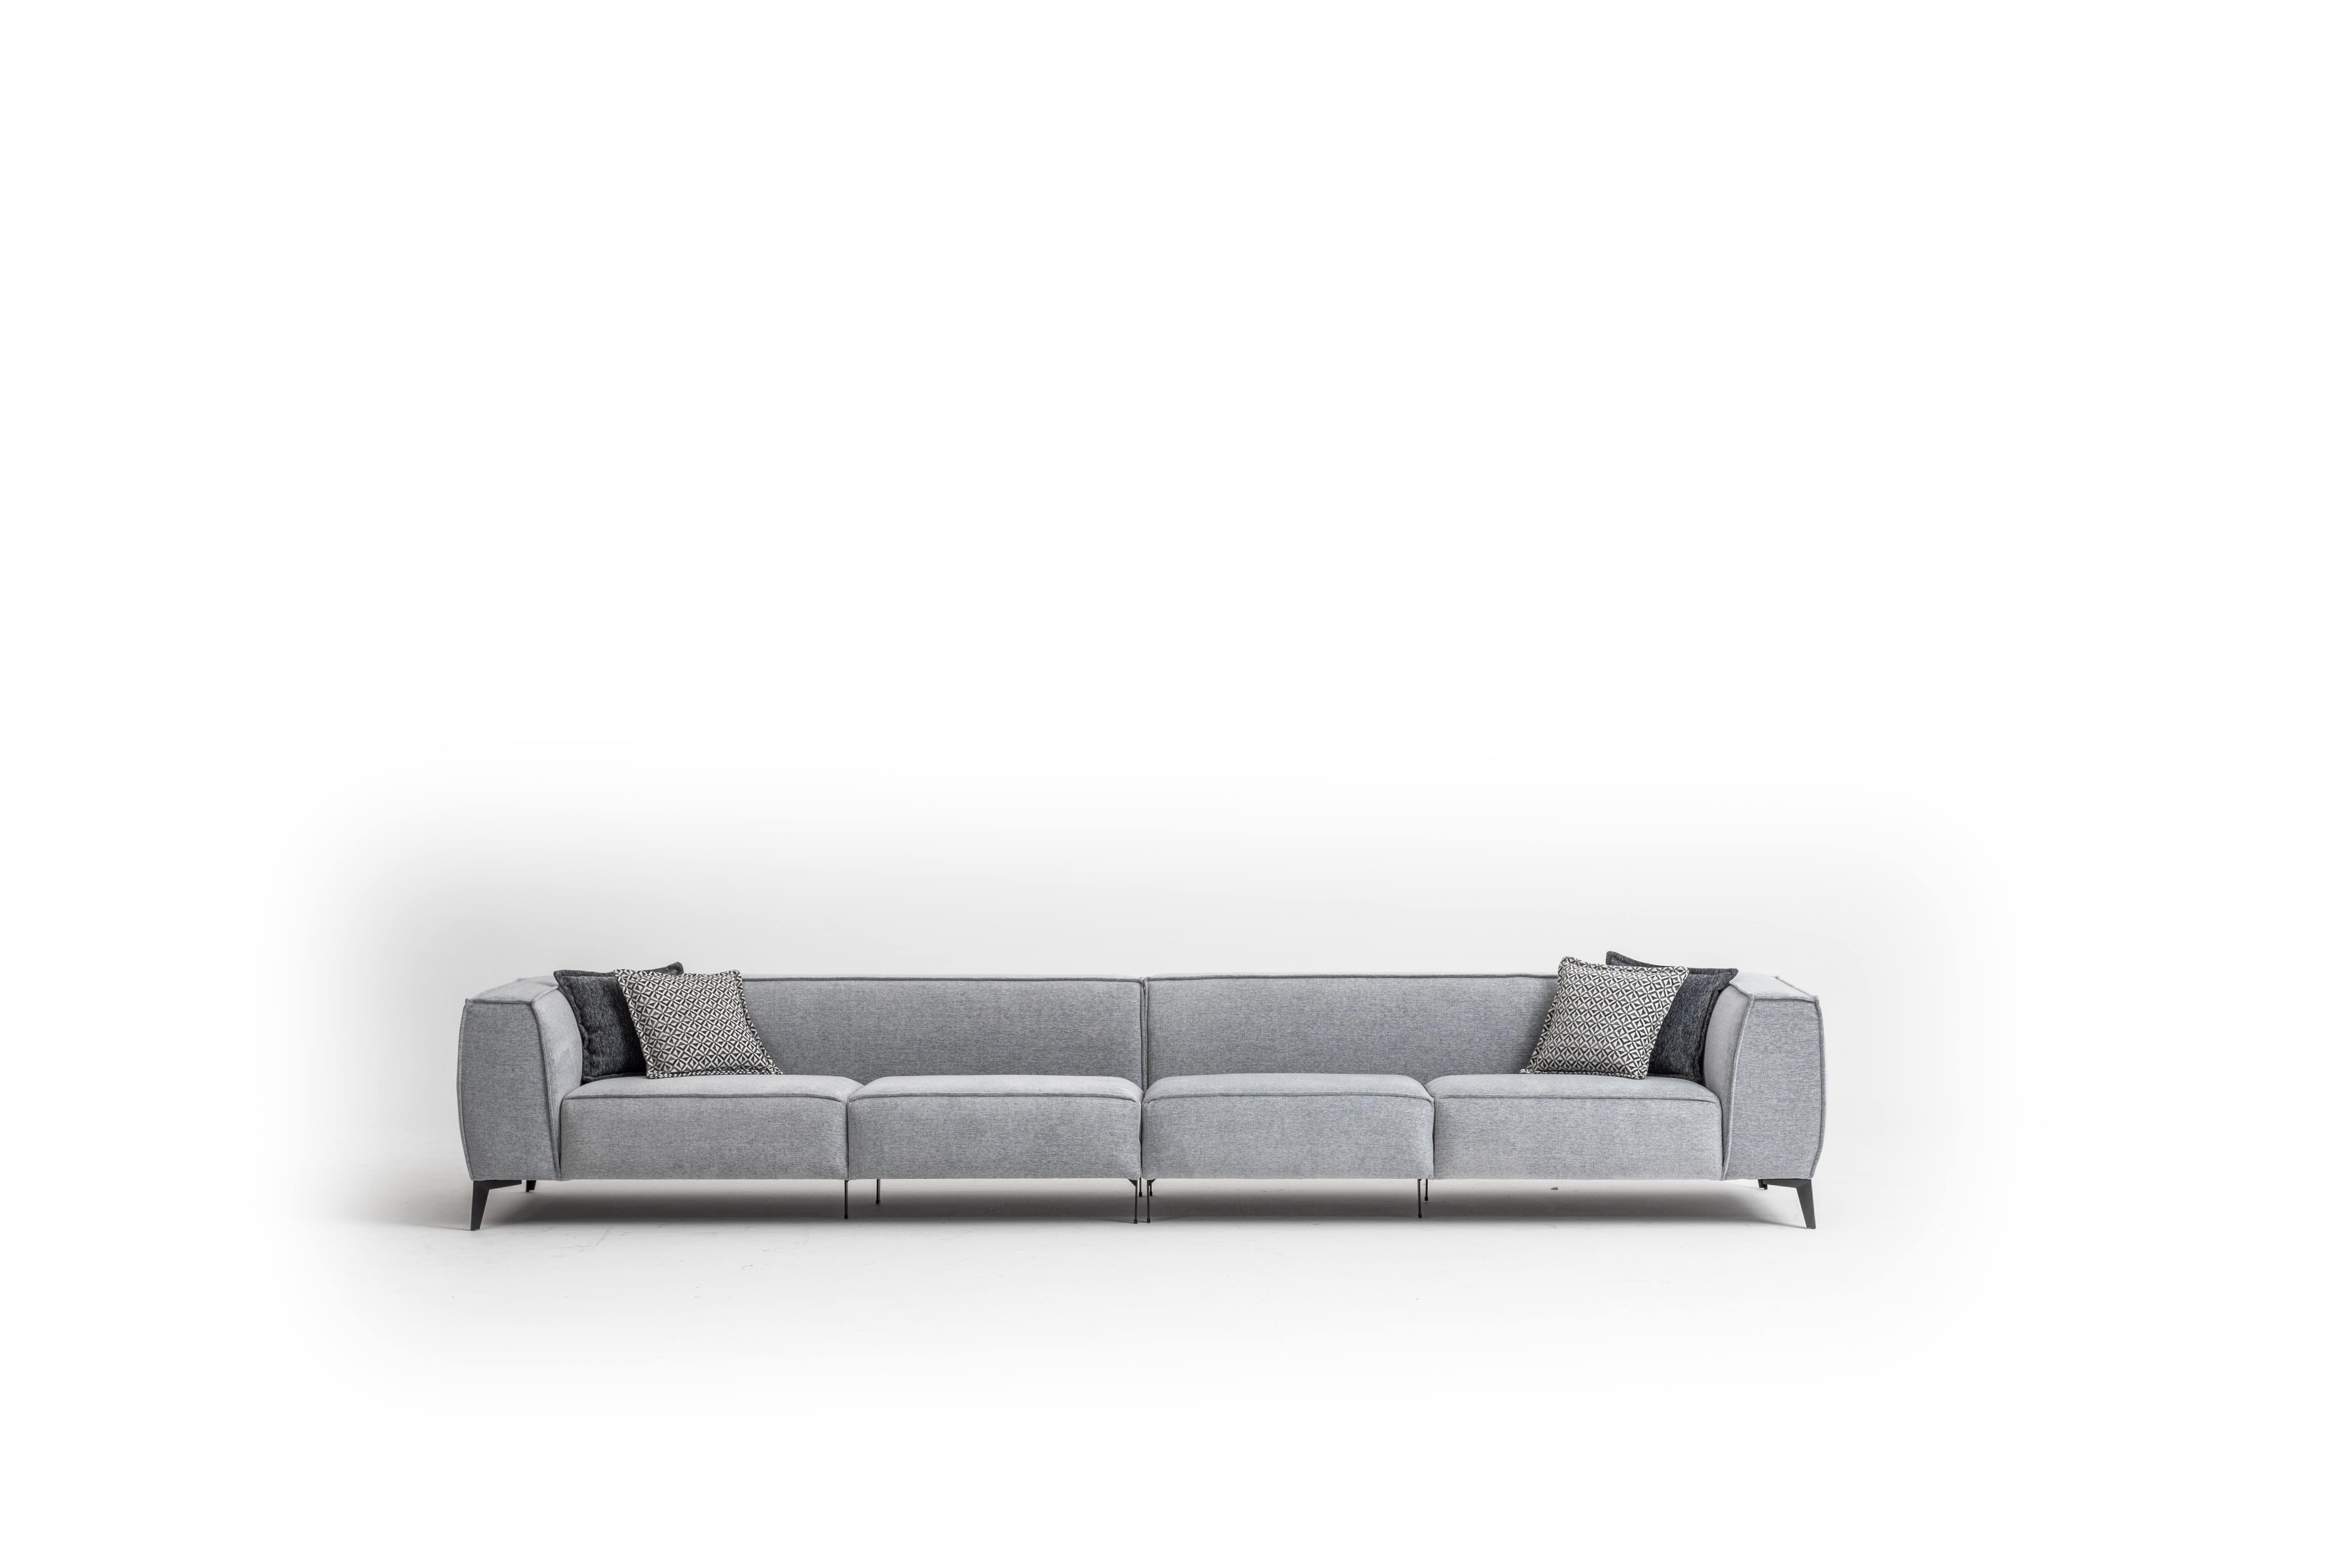 Qualität garantiert! JVmoebel Big-Sofa Modern Sitzer Modern Sofa Made Sofas in 420cm, 6 Wohnzimmer Textilsofa Europe